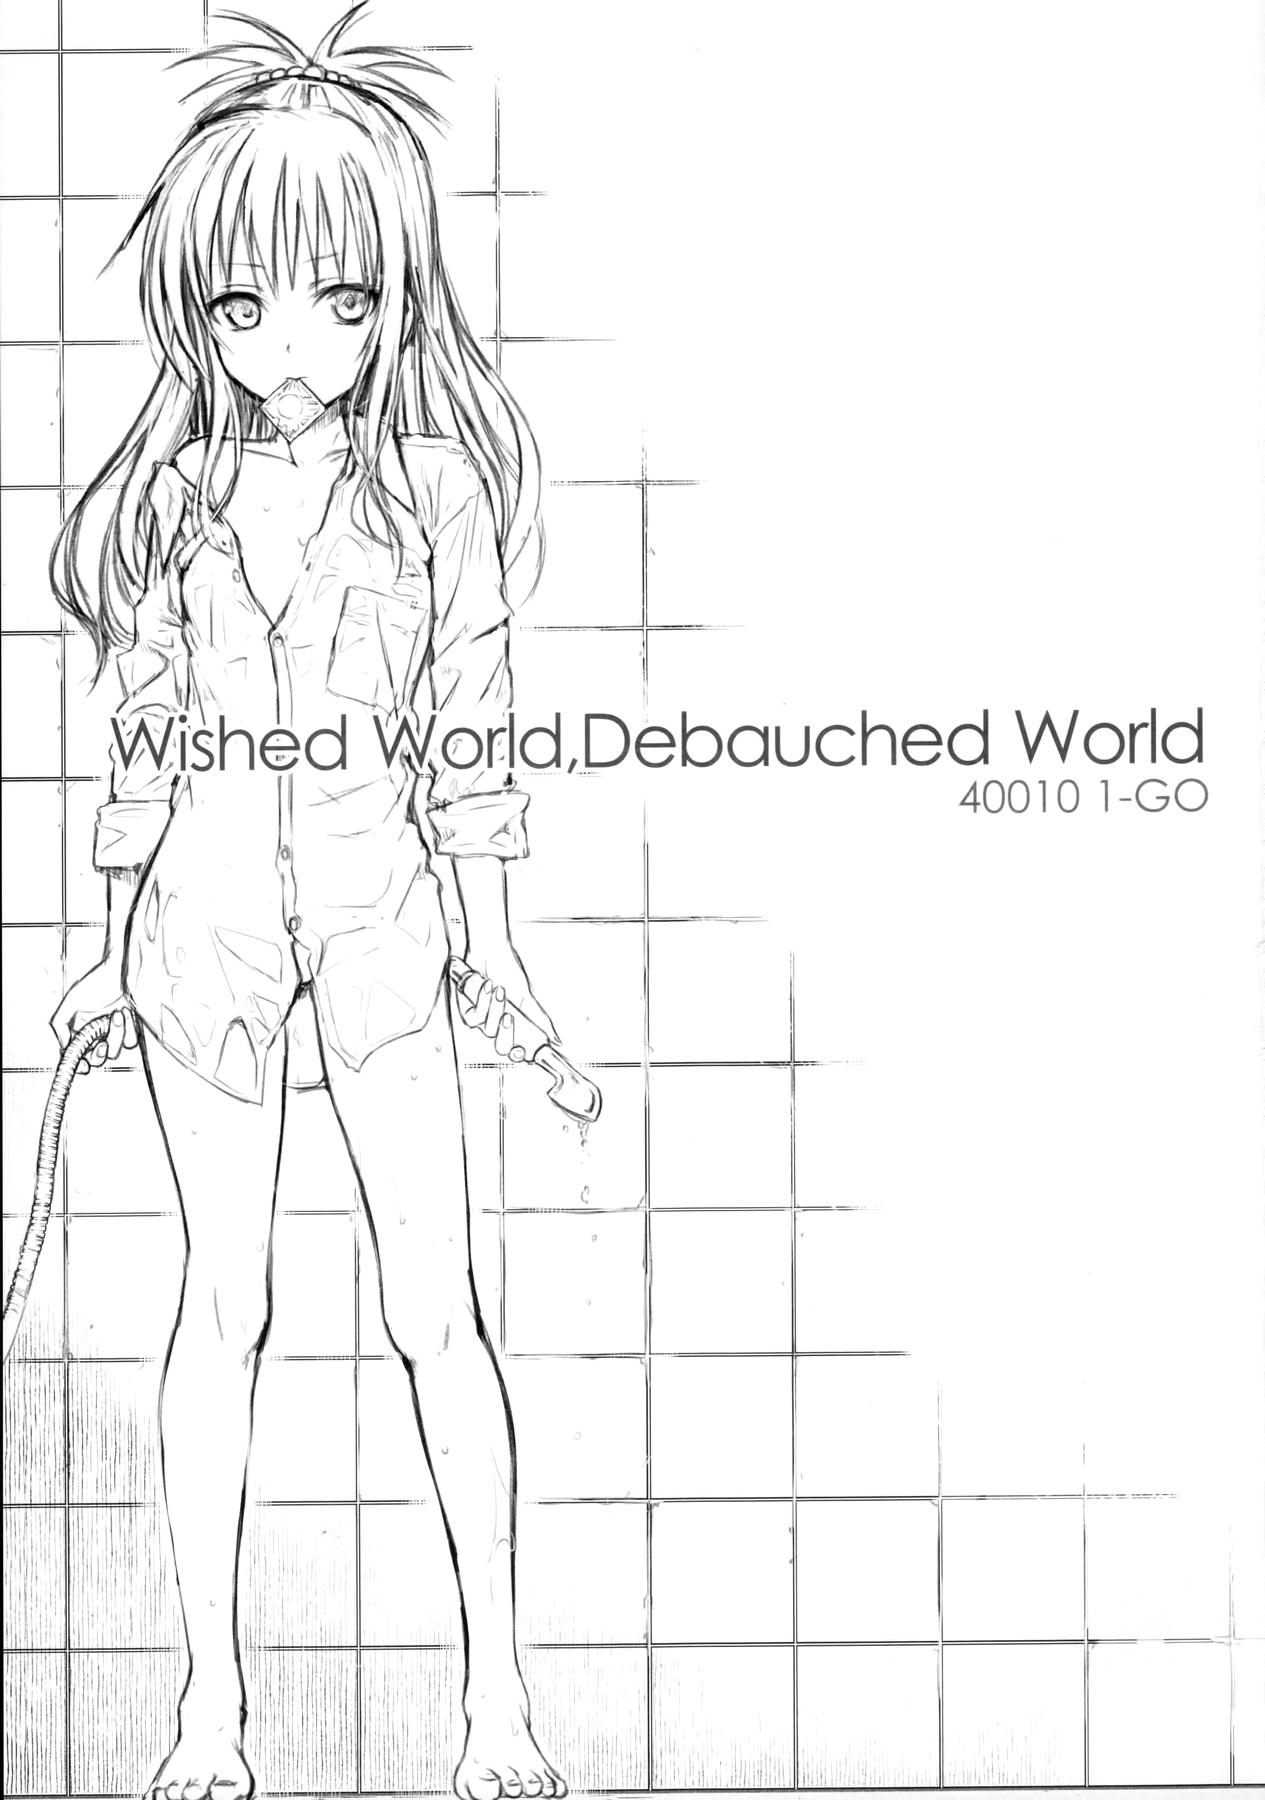 Wished World, Debauched World 2